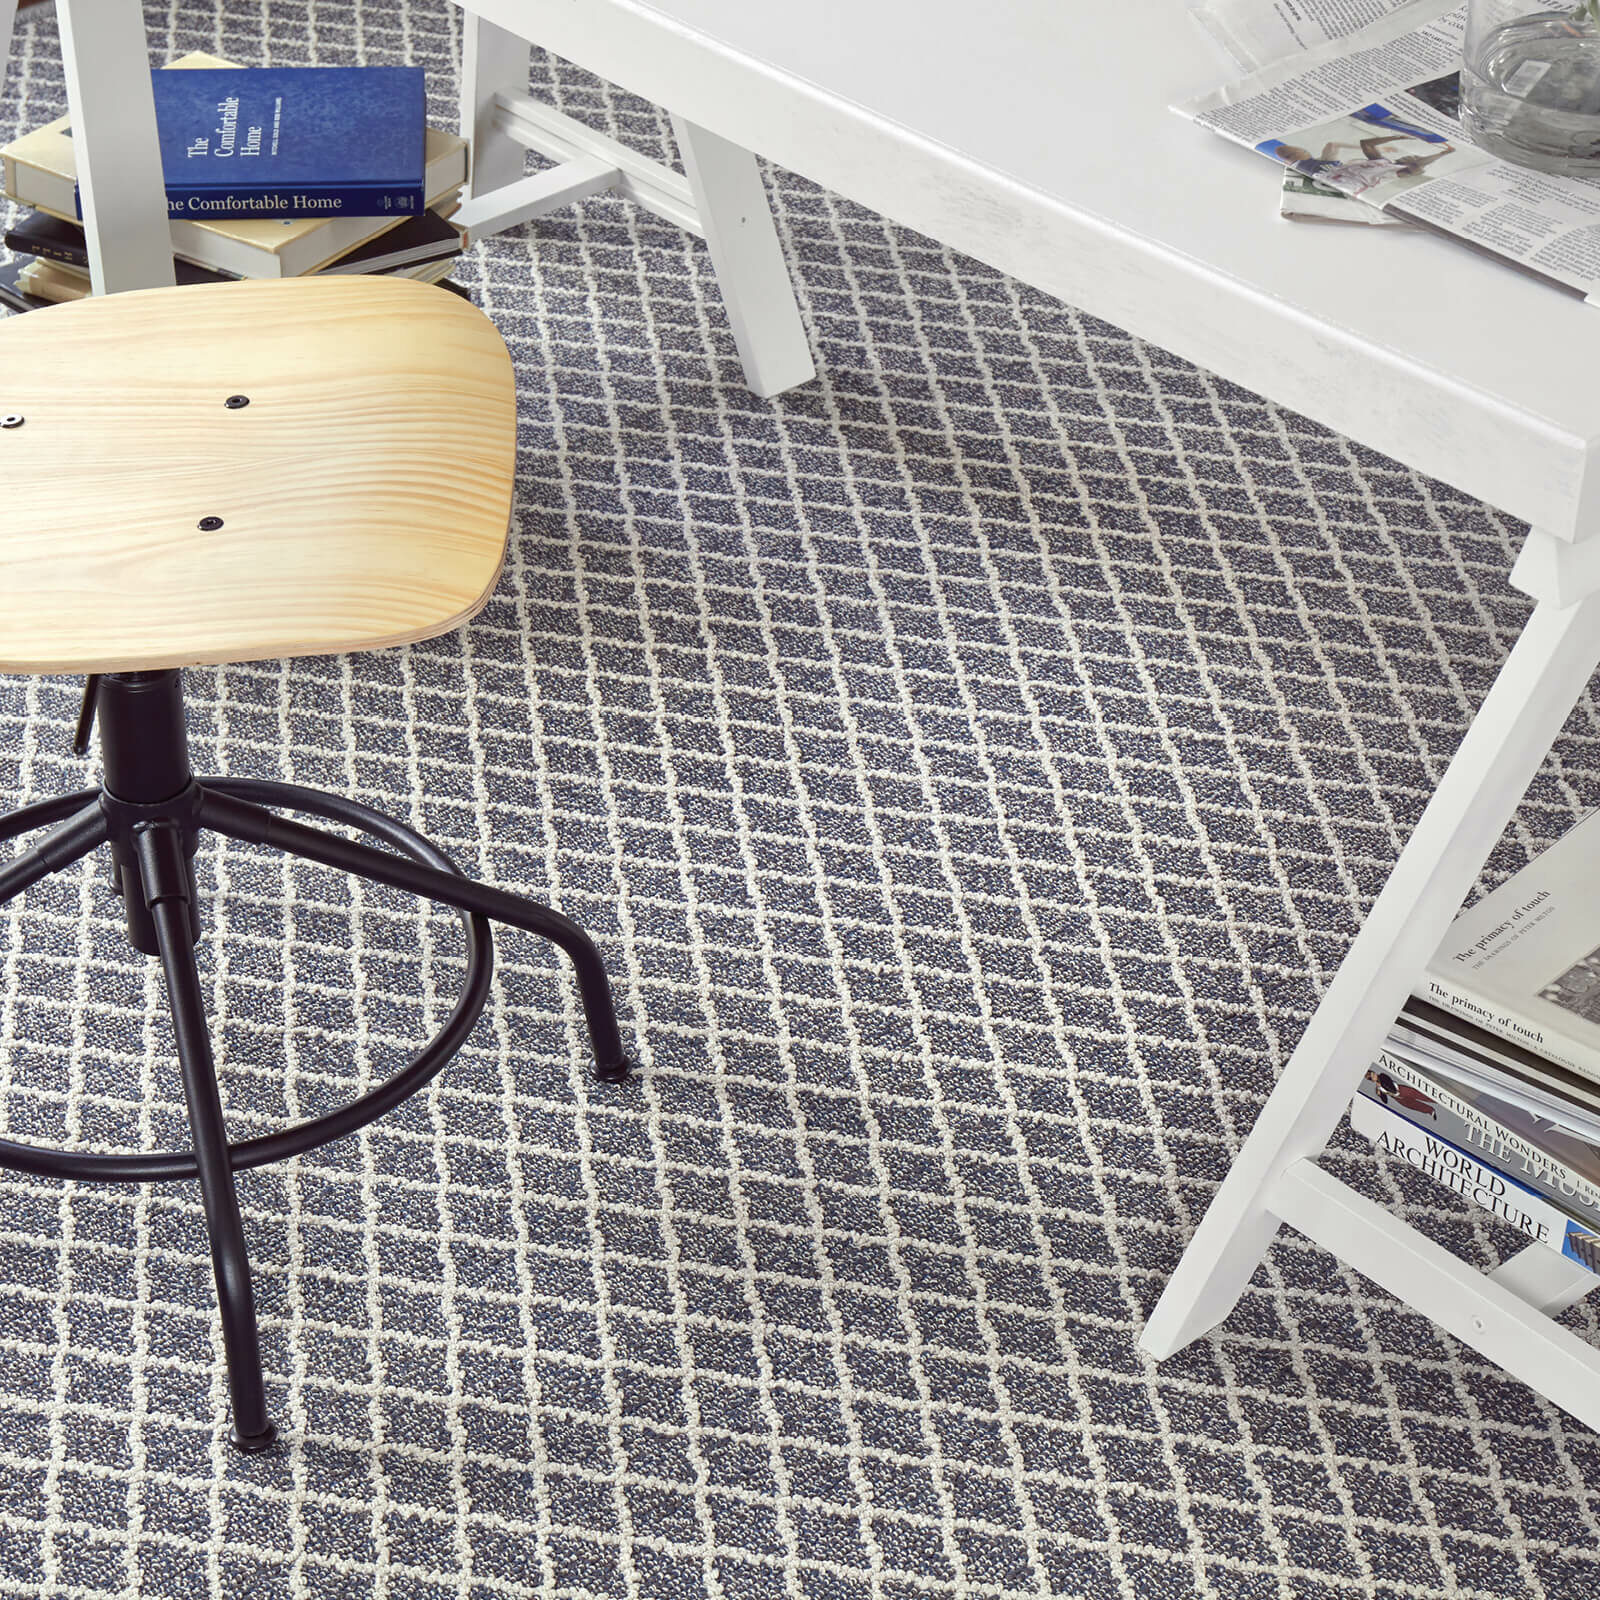 Carpet design | The Flooring Center